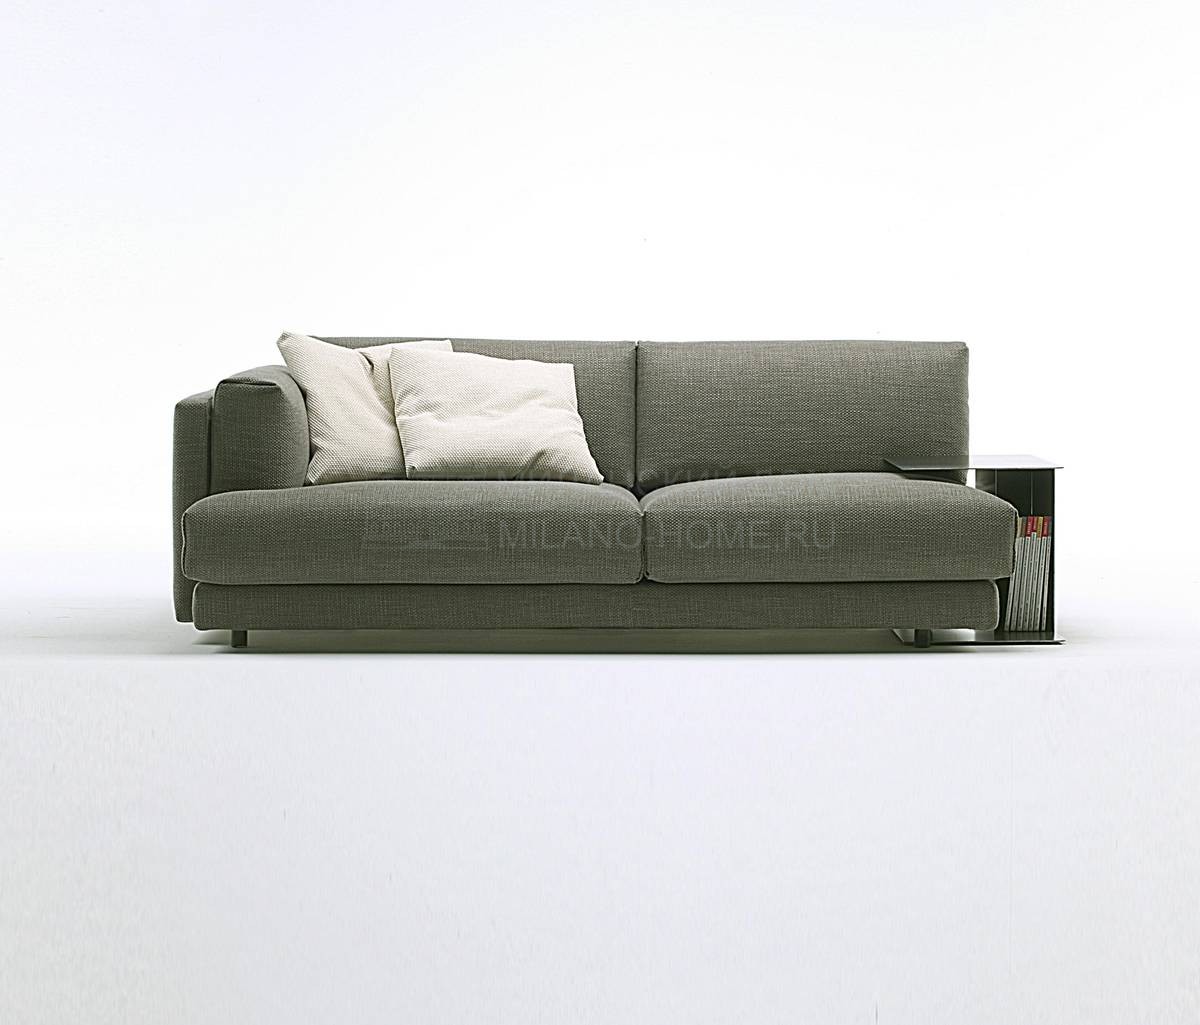 Угловой диван Family divano из Италии фабрики LIVING DIVANI